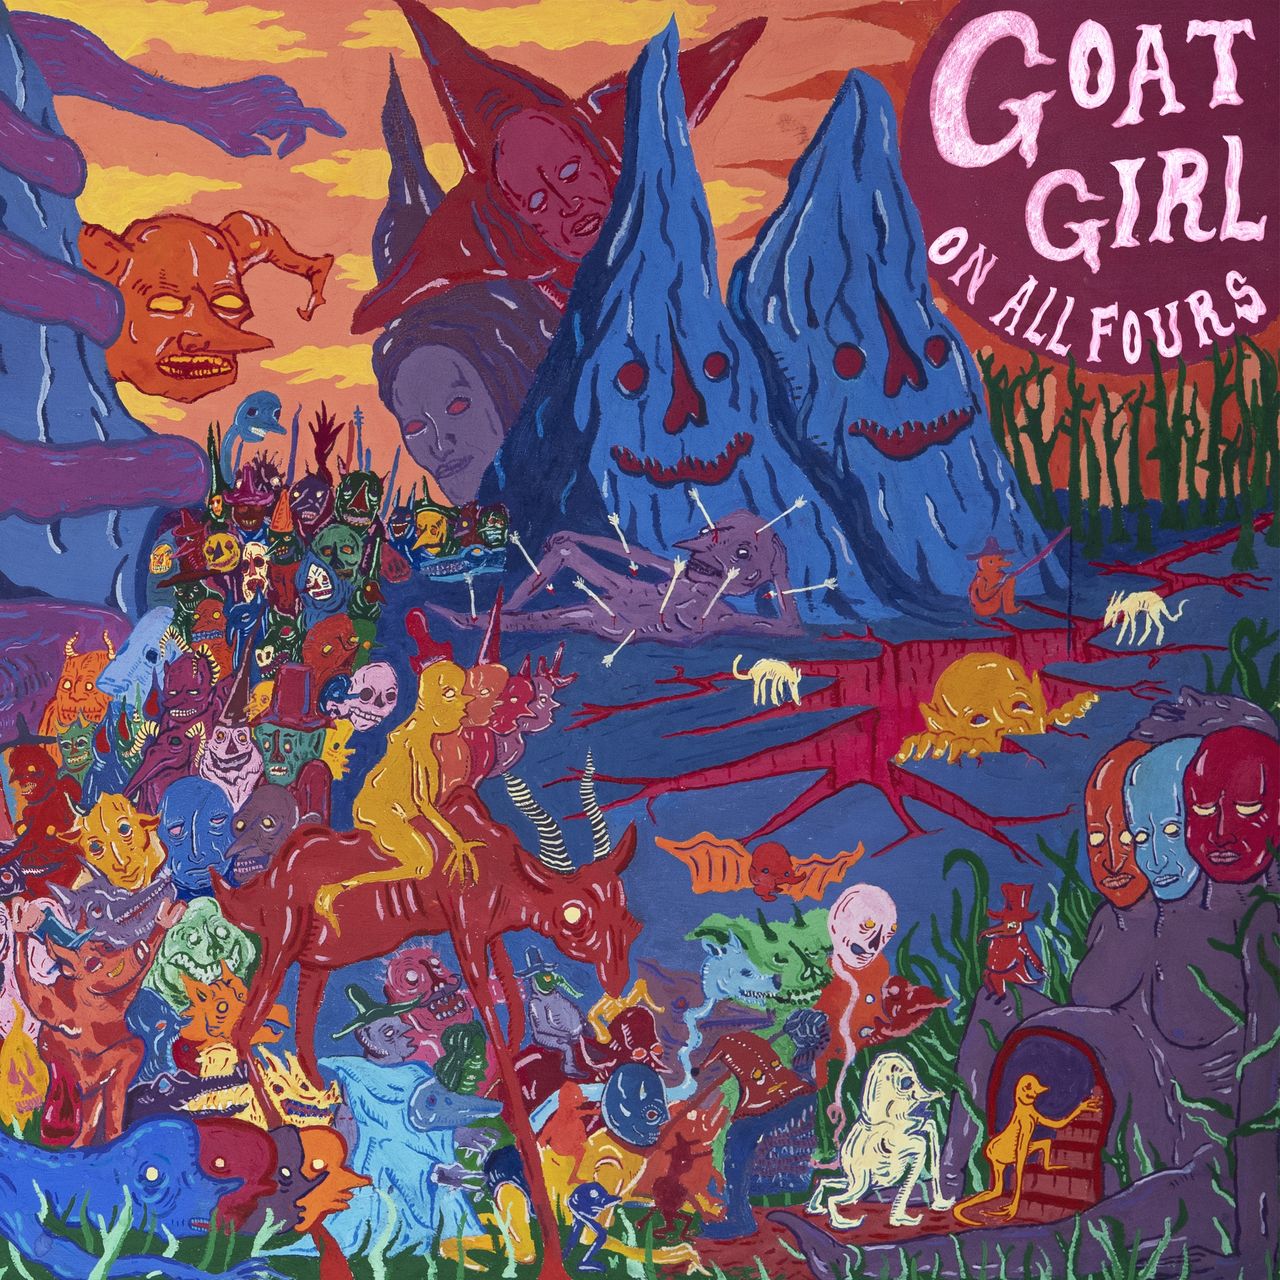 Goat Girl und ihr neues Album "On All Fours"